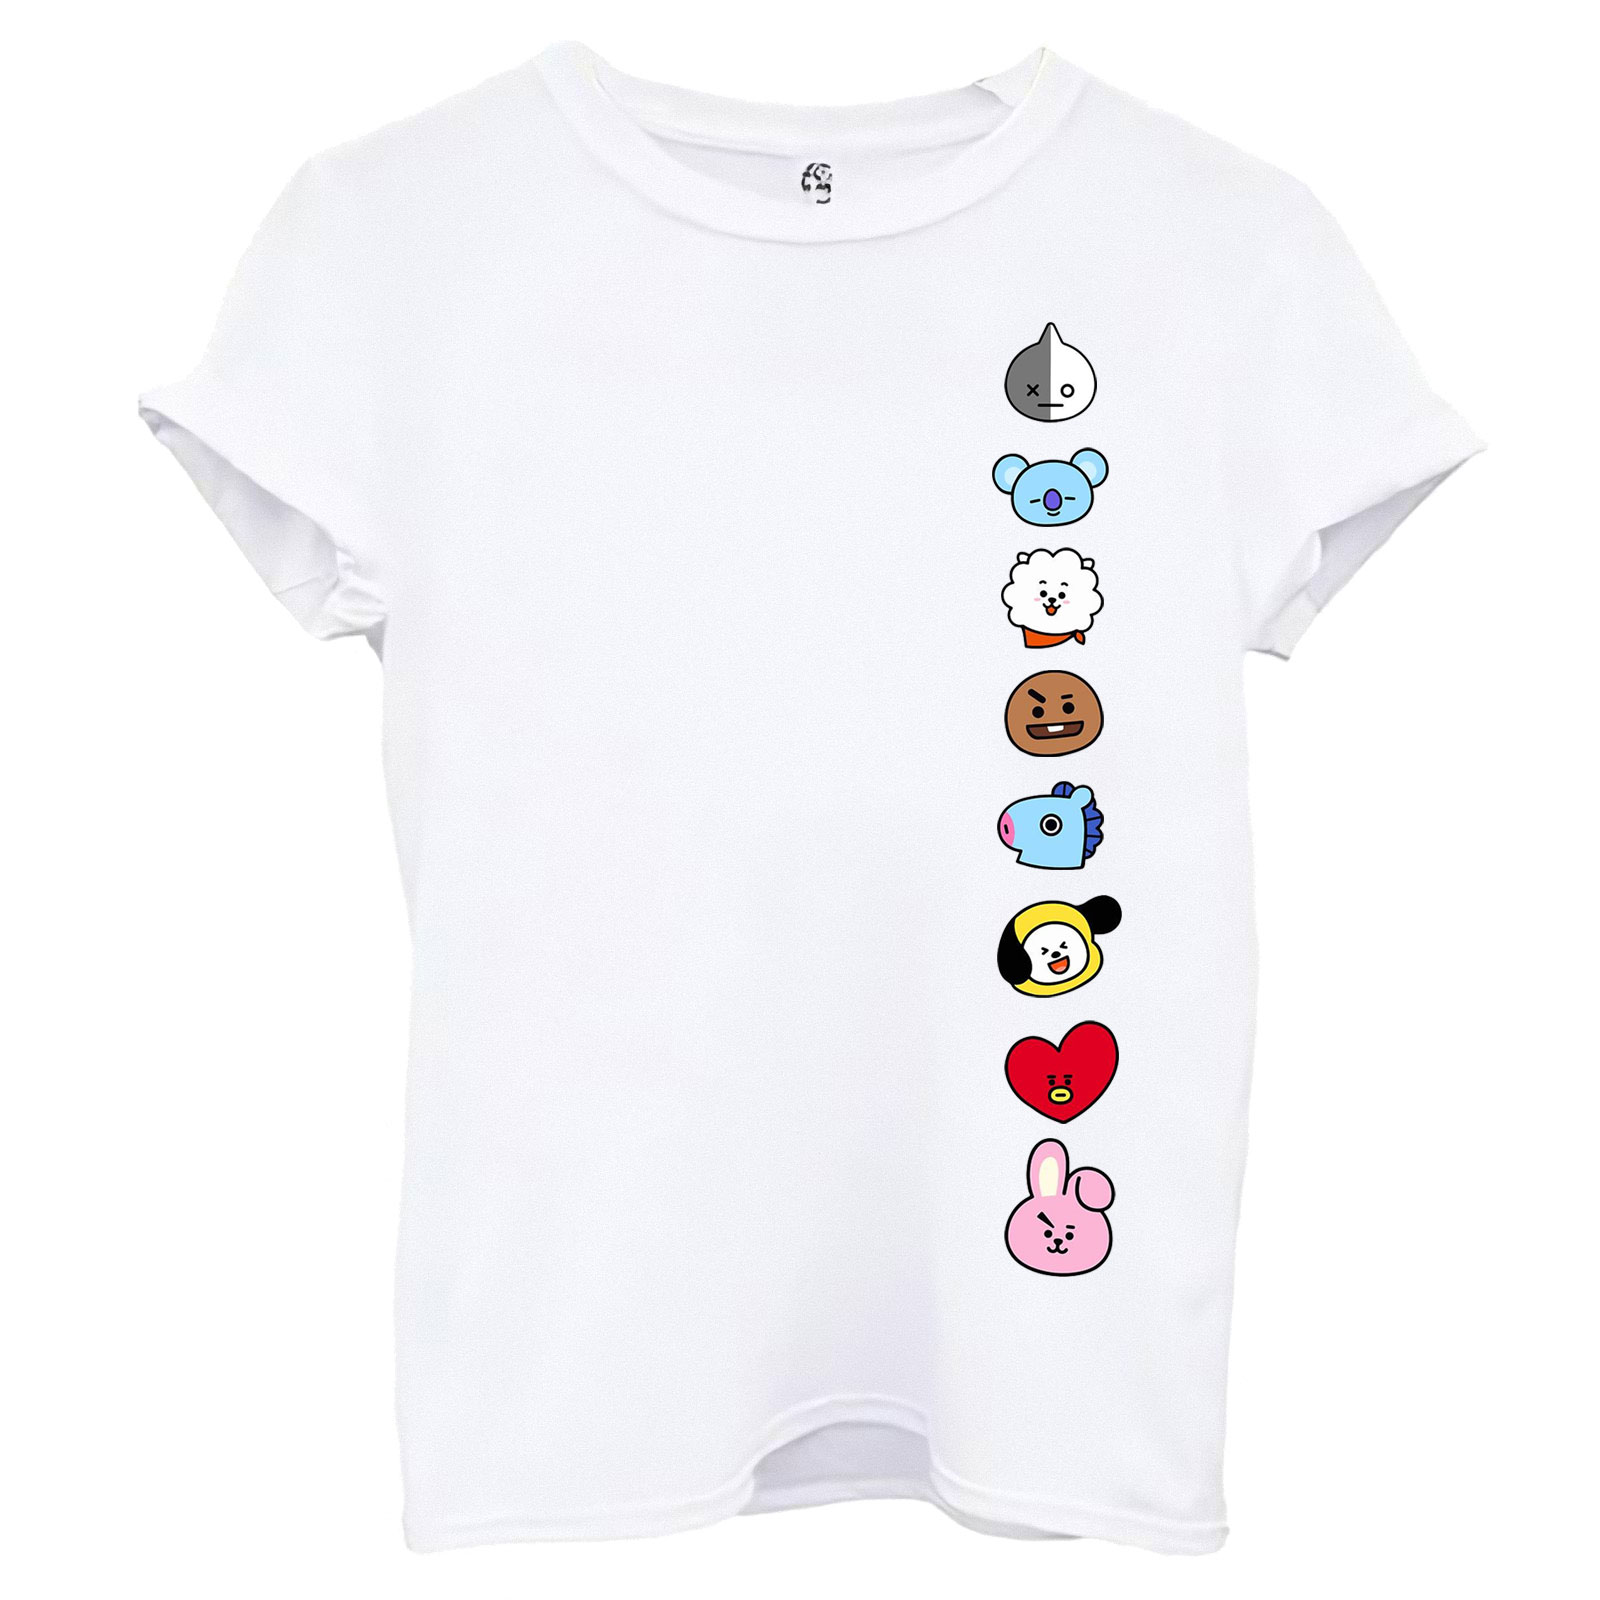 تی شرت آستین کوتاه زنانه اسد طرح BT21 کد 99 – فروشگاه اینترنتی پوشاک